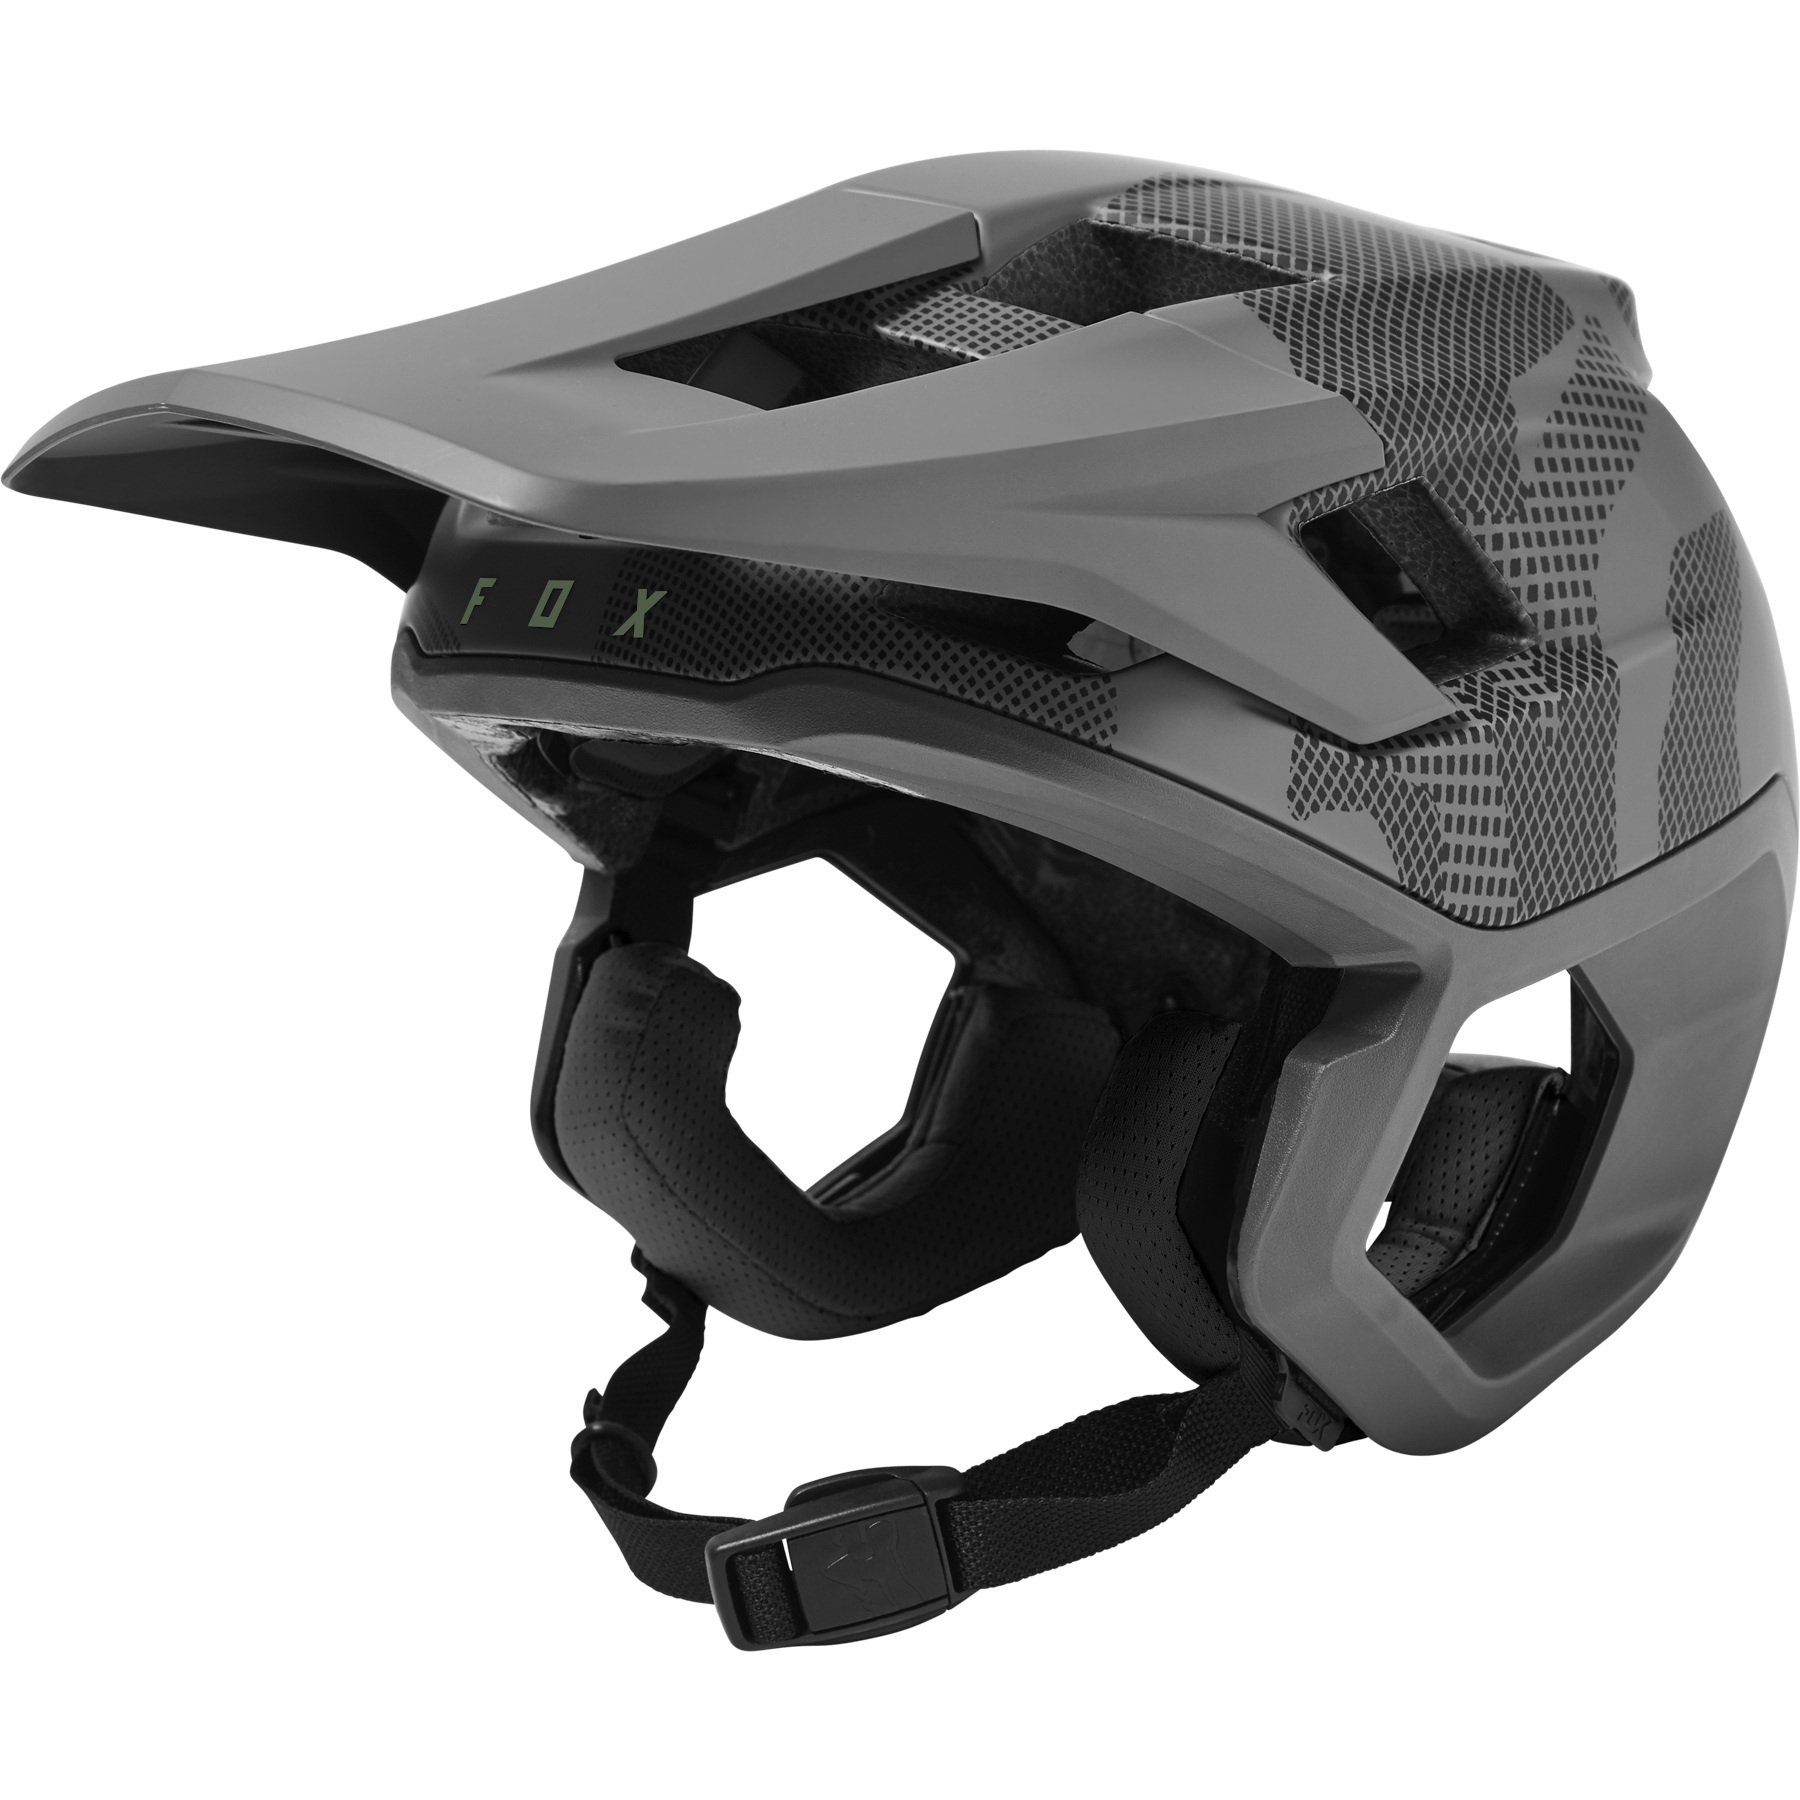 Produktbild von FOX Dropframe Pro Trail Helm - Camo - grey camo